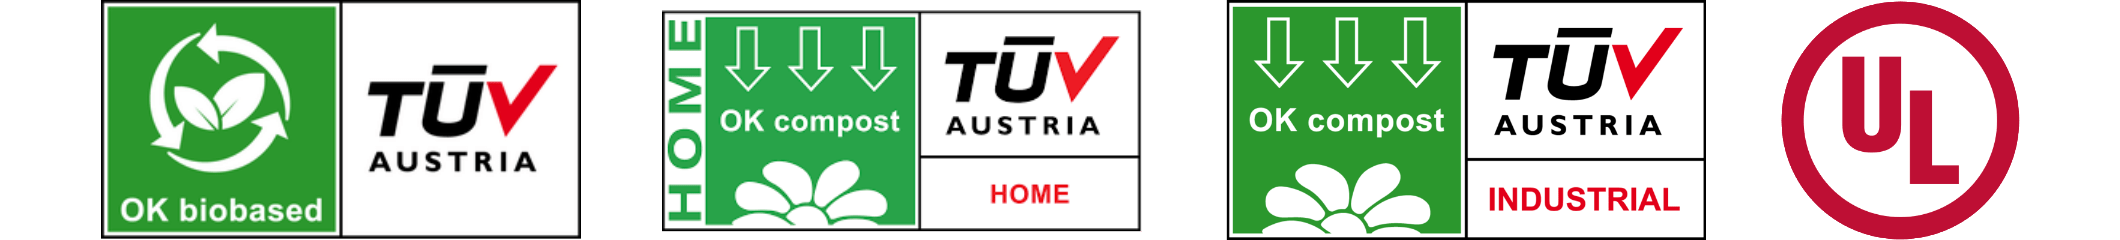 TUV Austria OK biobasé (4 étoiles)/TUV Austria OK Compost Home & Industrial/UL Validé : taux de récupération de 99% des fibres disponibles